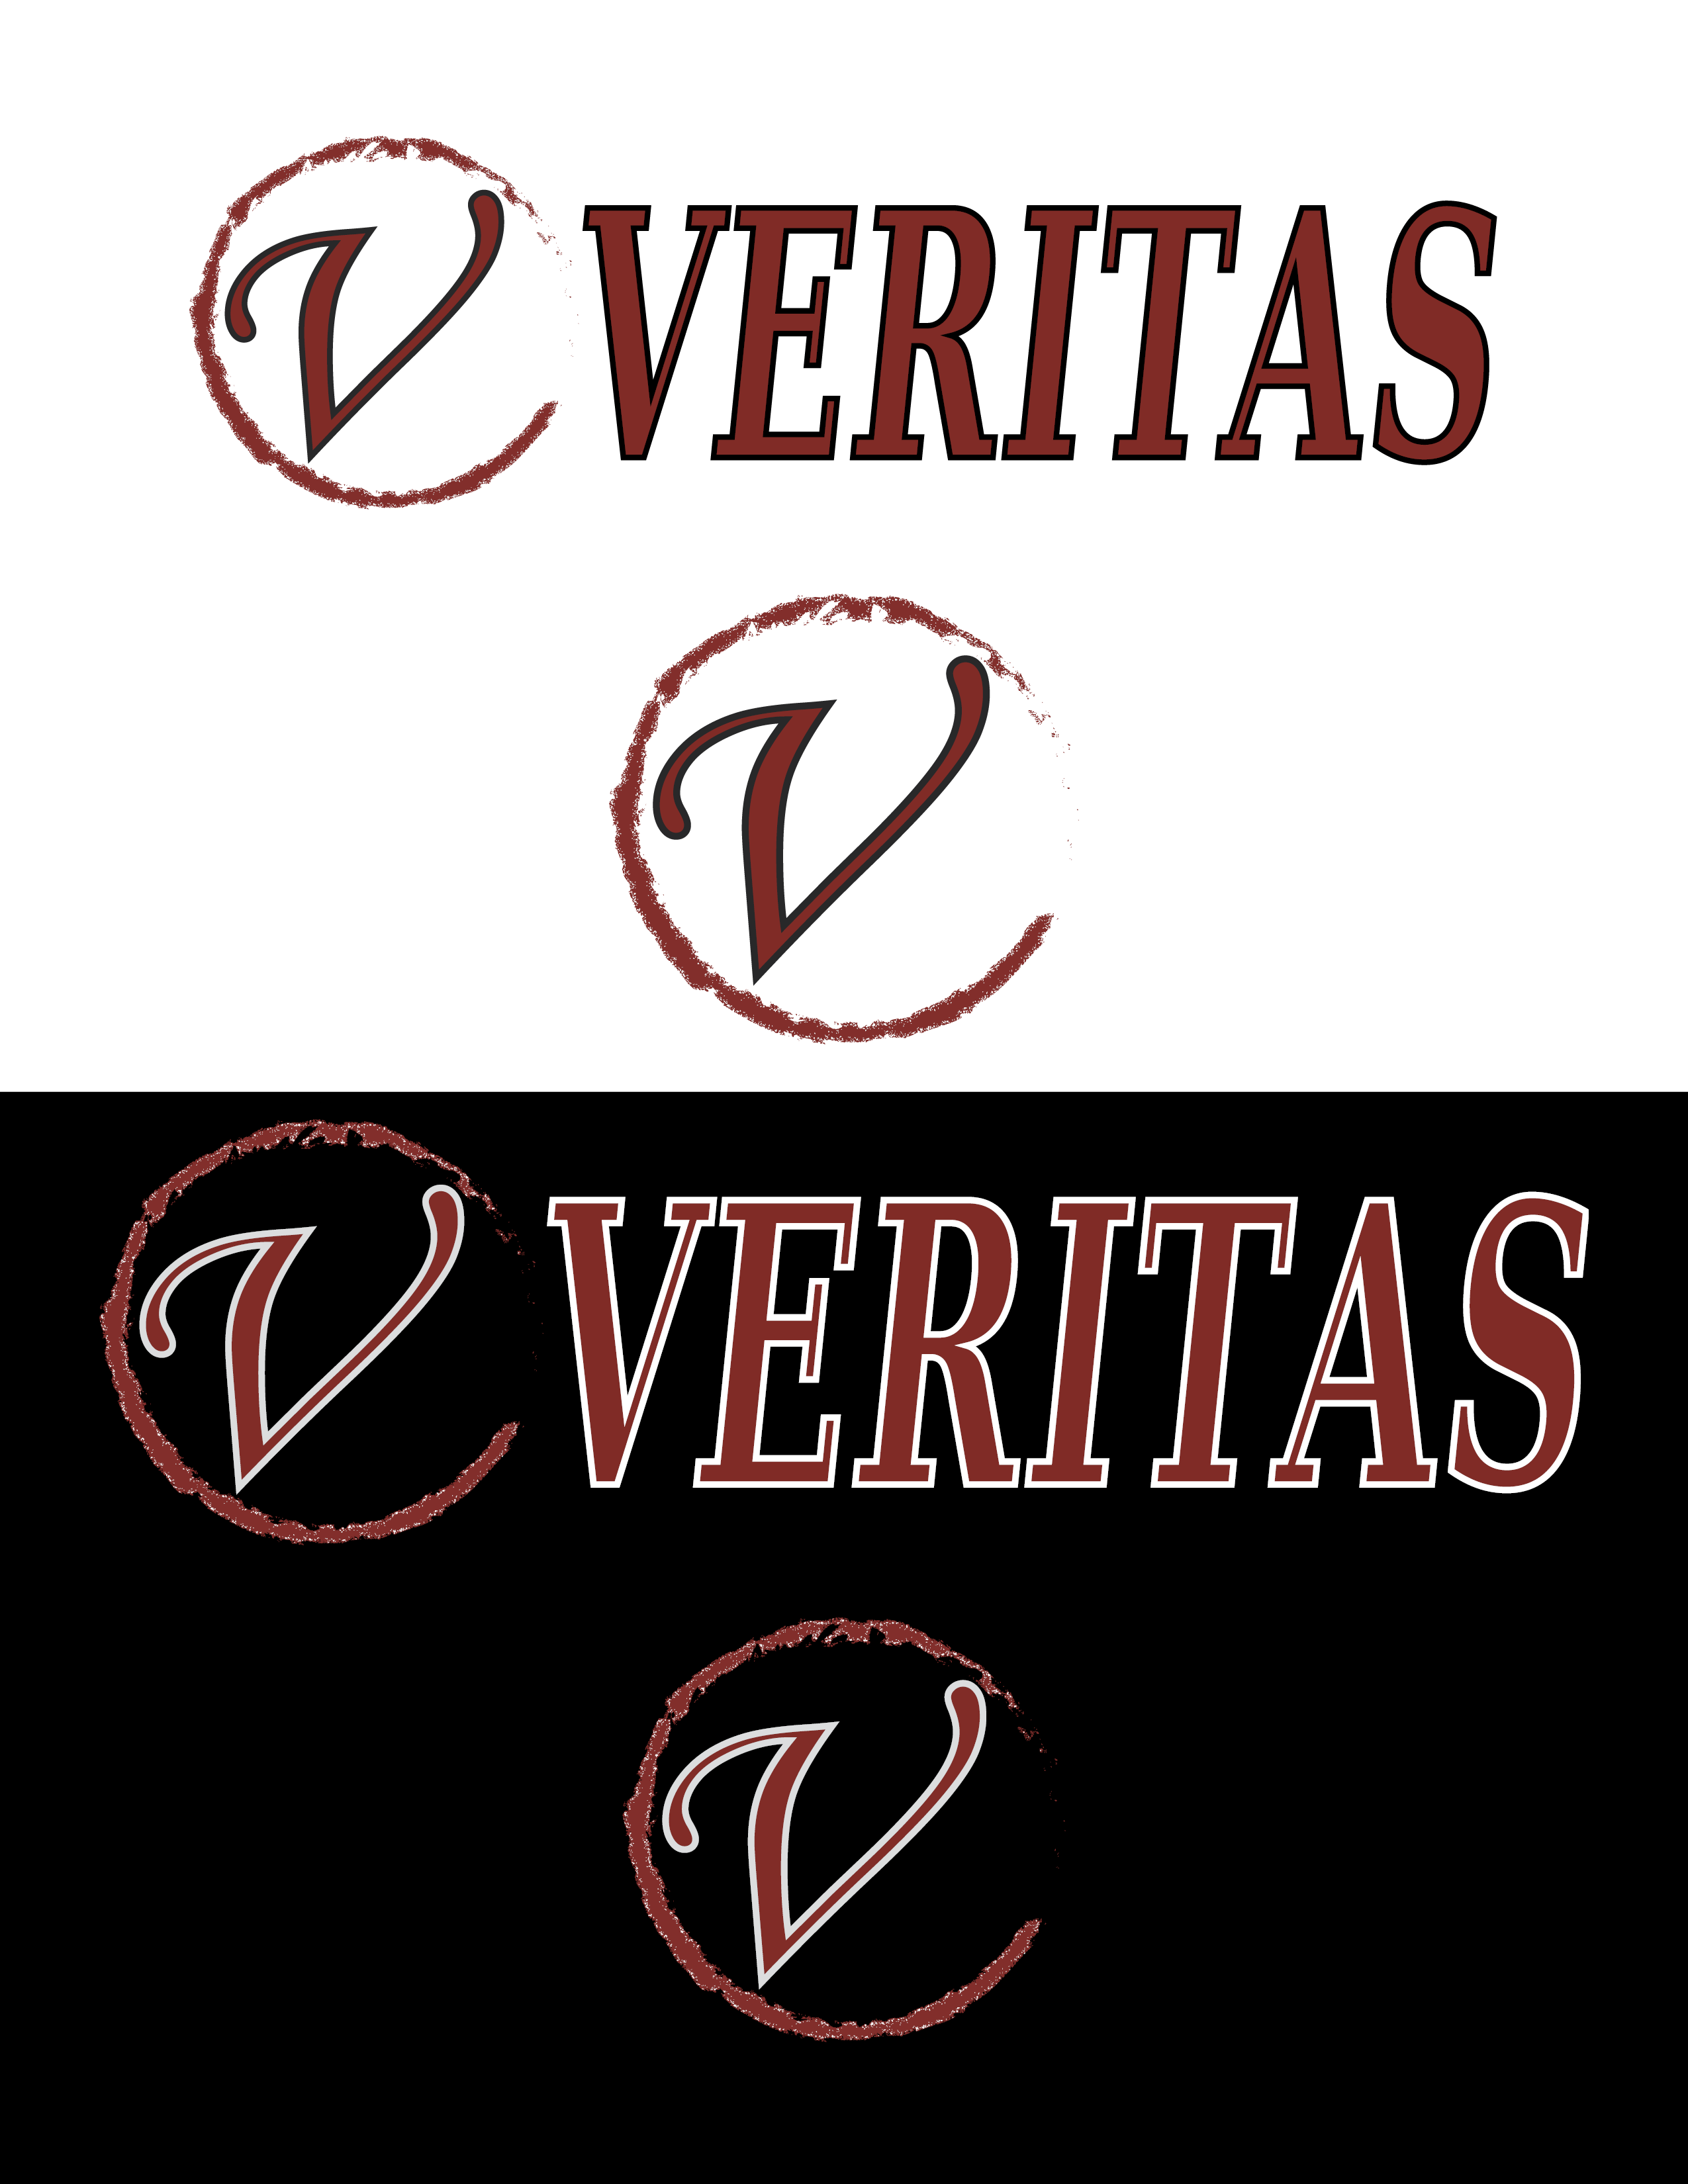 Bureau Veritas png images | Klipartz